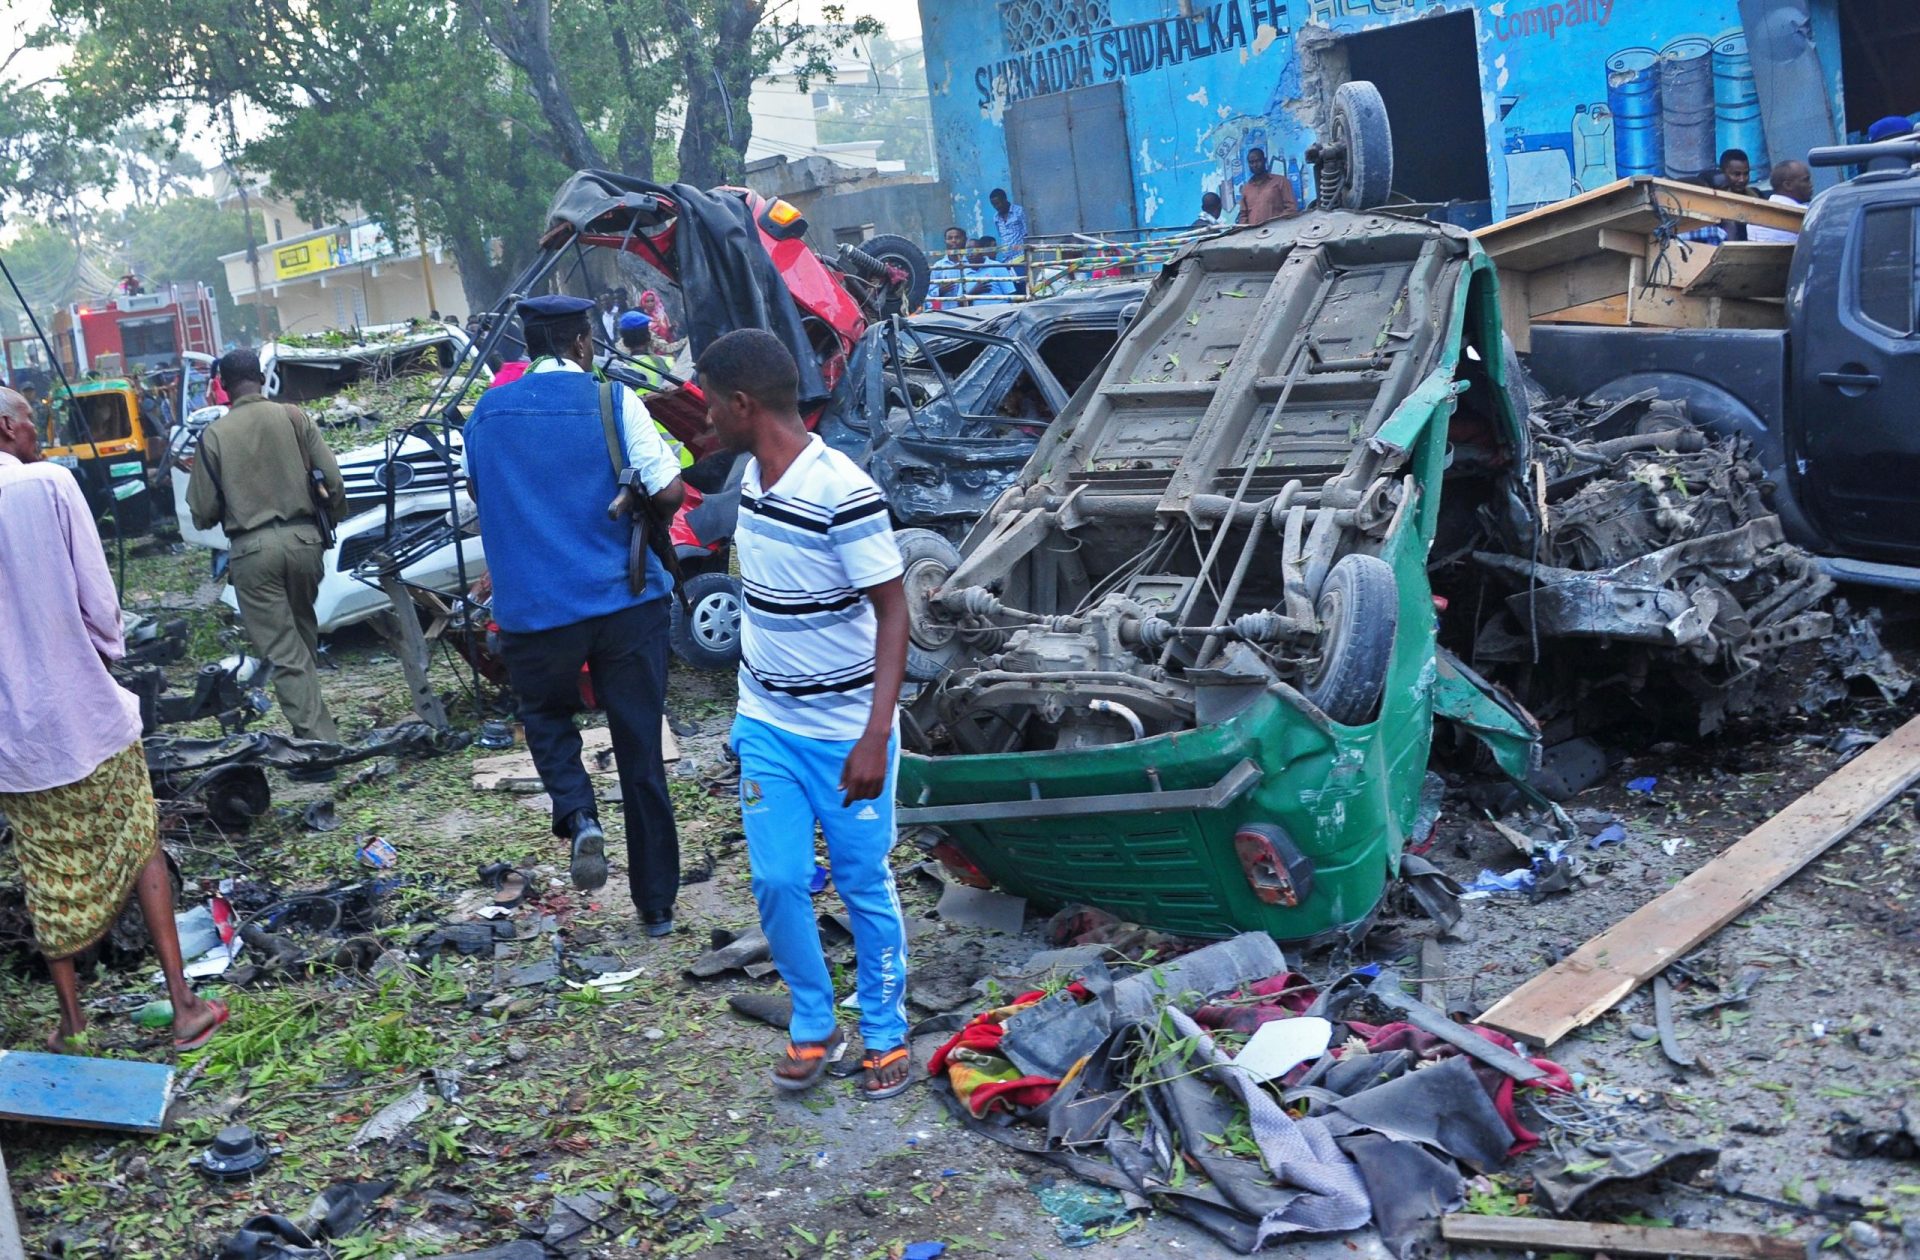 Somália. Dois ataques terroristas fazem pelo menos 14 mortos